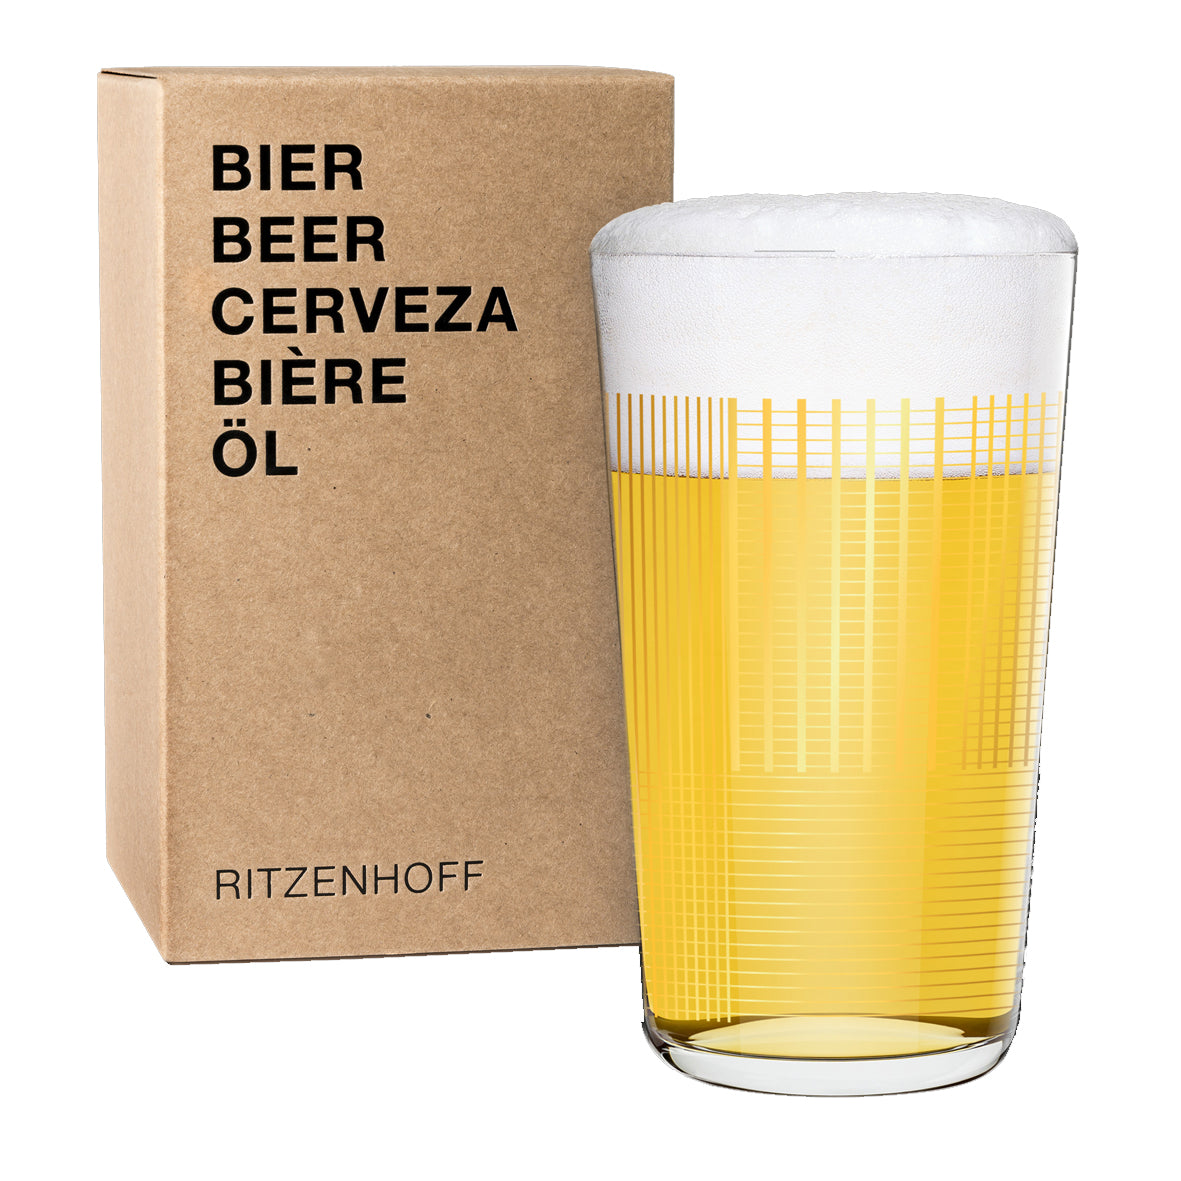 Ritzenhoff Beer Glass. Made in Marsberg Germany.